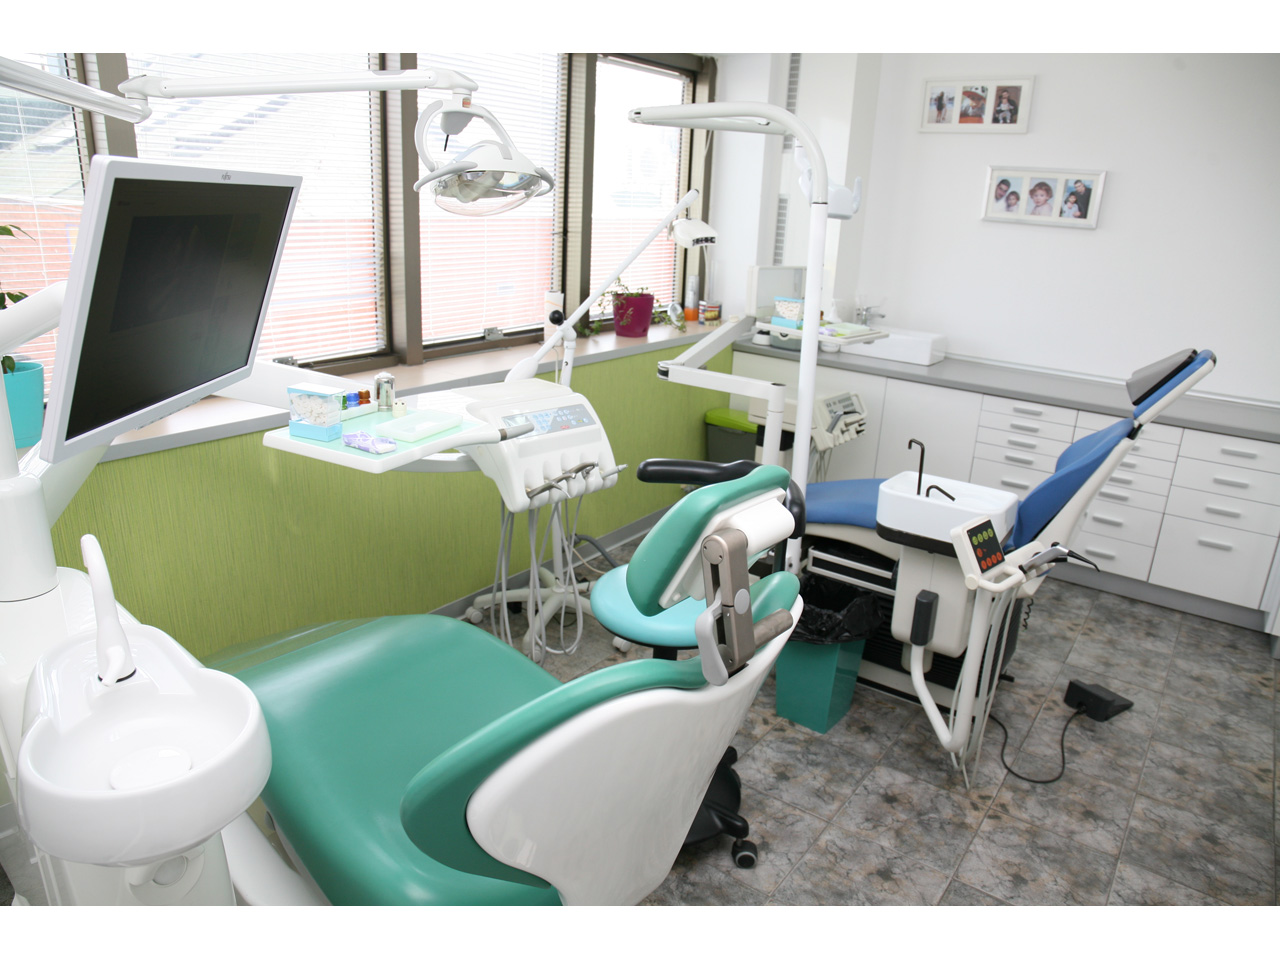 STOMATOLOSKA ORDINACIJA DR LAZAREVIC Dental surgery Belgrade - Photo 9